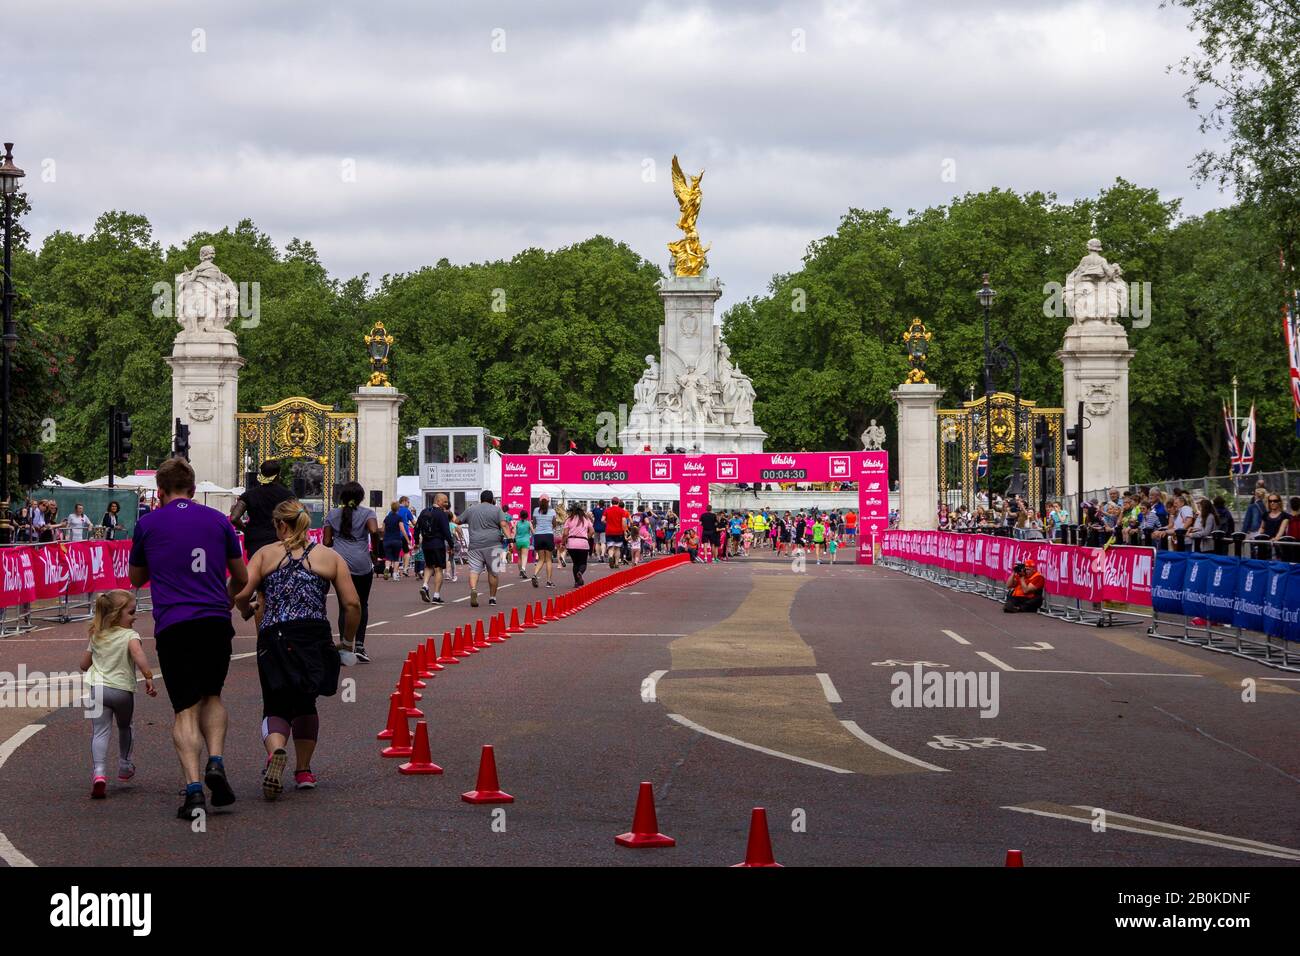 Londres/Angleterre - 26 mai 2019: Un portrait de paysage des gens qui courent à la ligne d'arrivée de l'événement de course de collecte de fonds Vitality London 10 k à Londres, Angl Banque D'Images